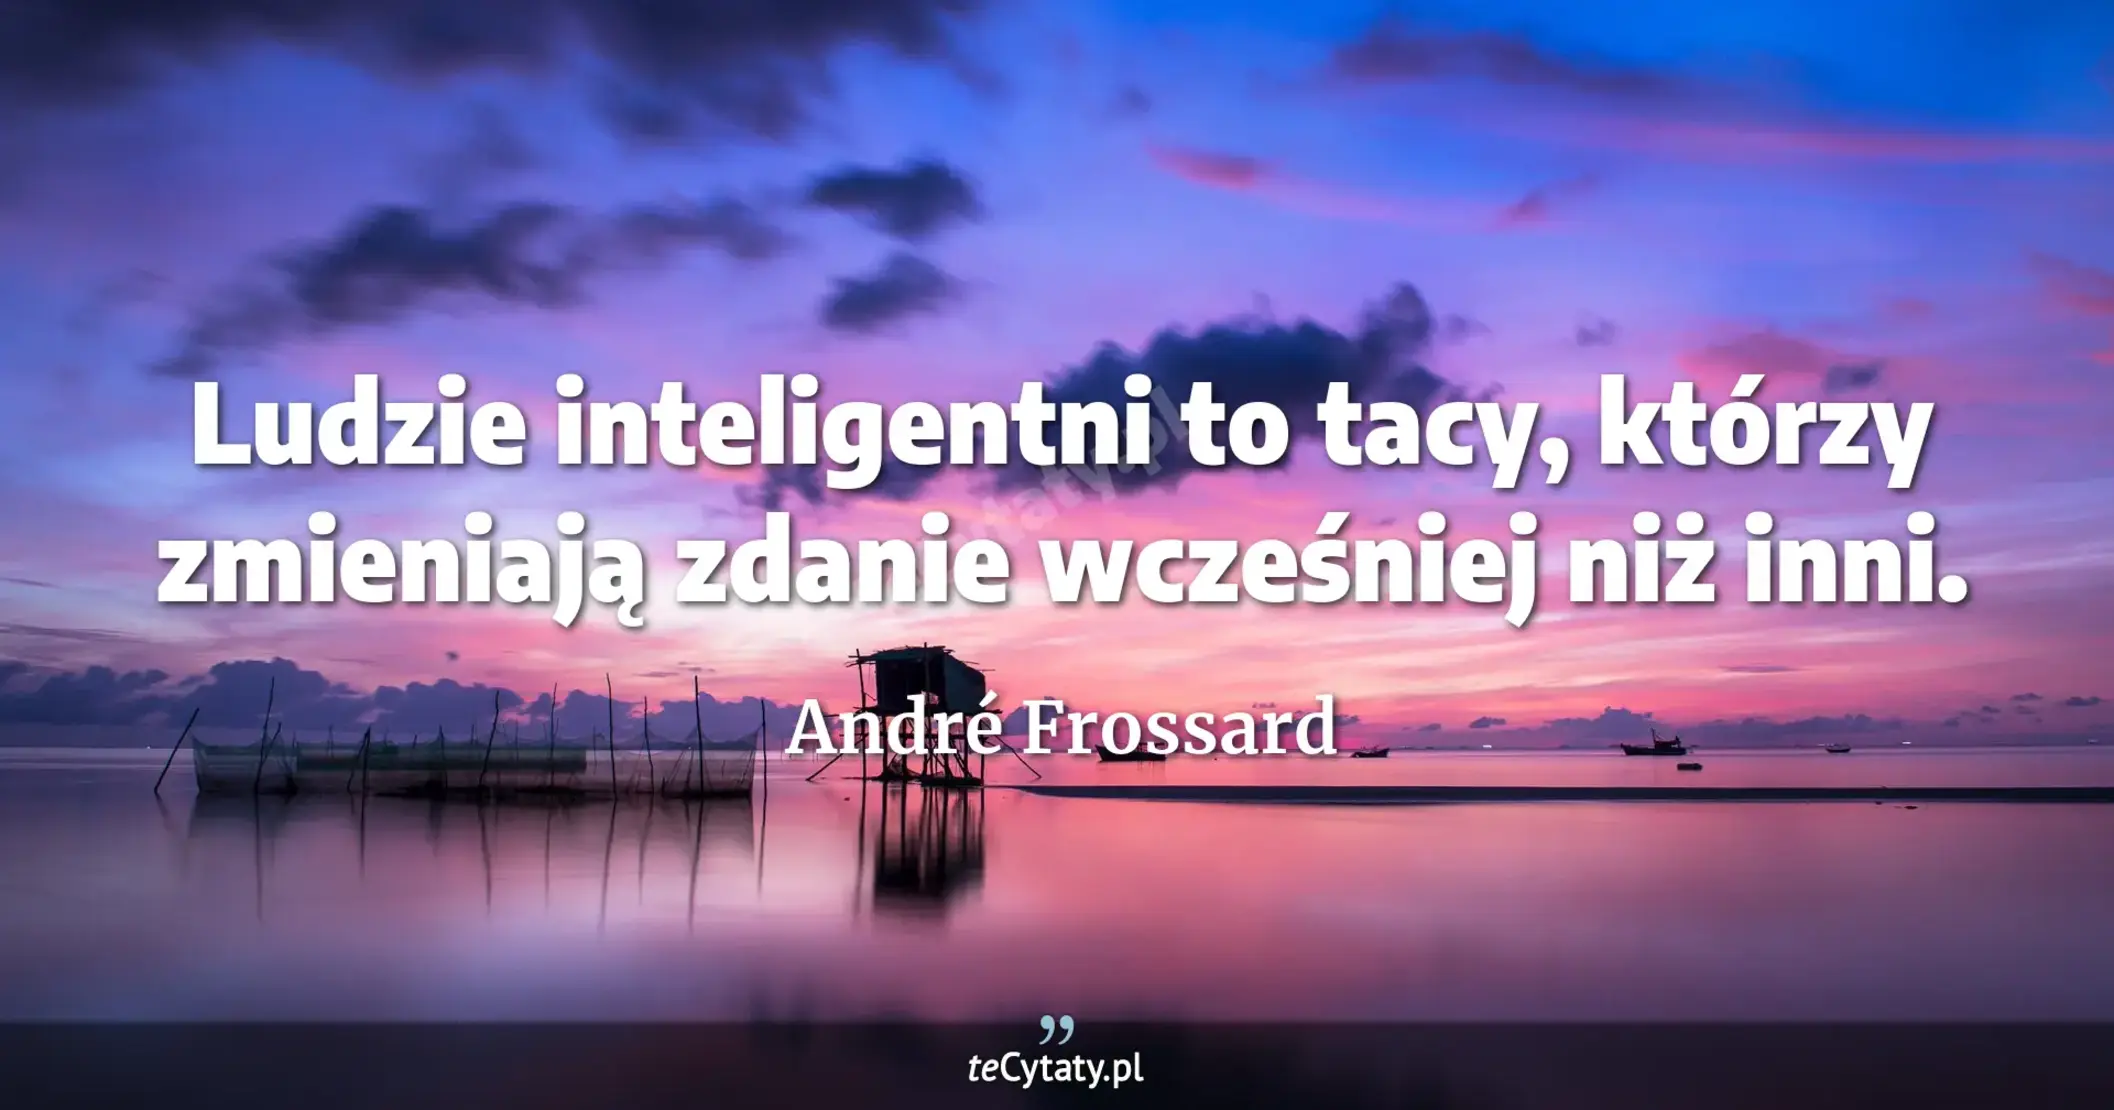 Ludzie inteligentni to tacy, którzy zmieniają zdanie wcześniej niż inni. - André Frossard